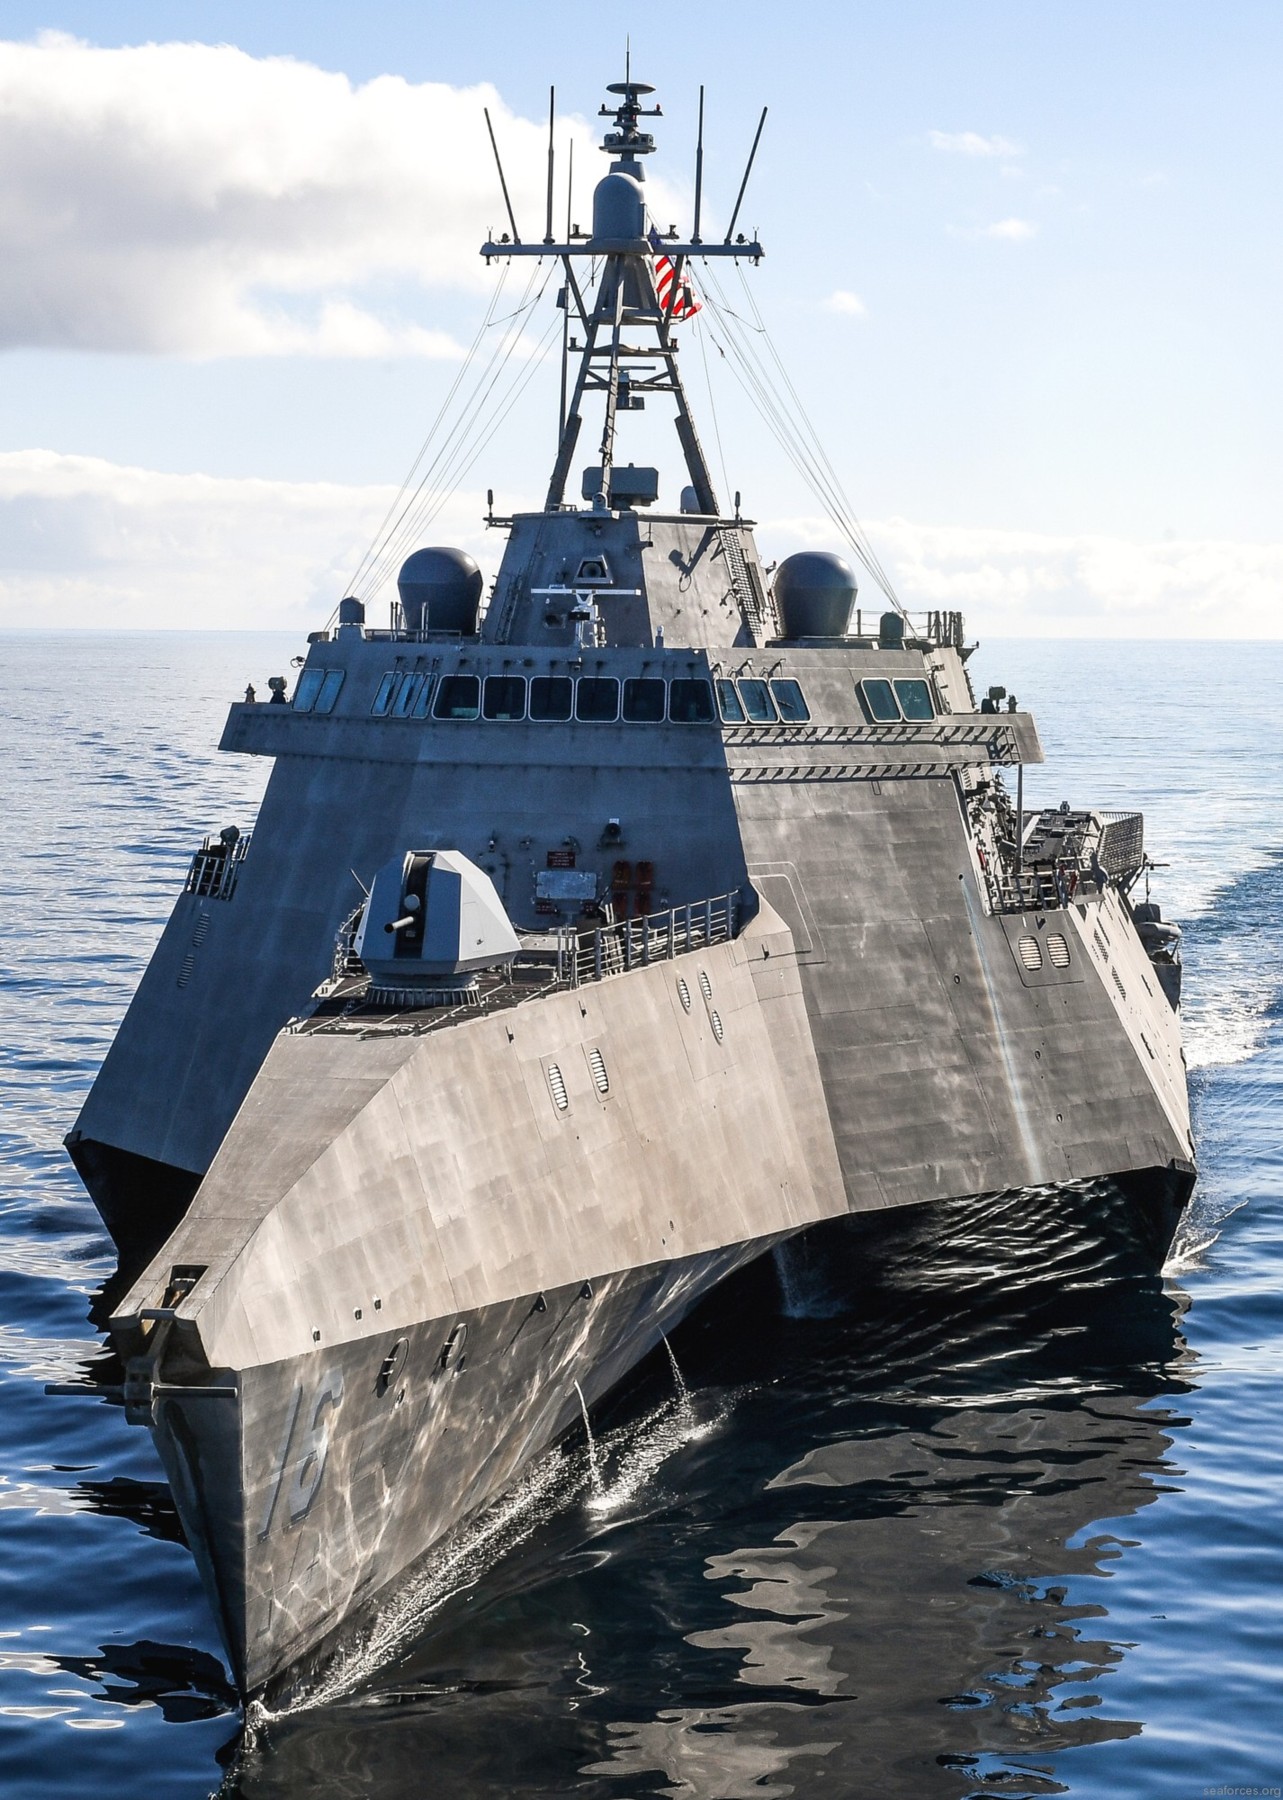 lcs-16 uss tulsa independence class littoral combat ship us navy 15